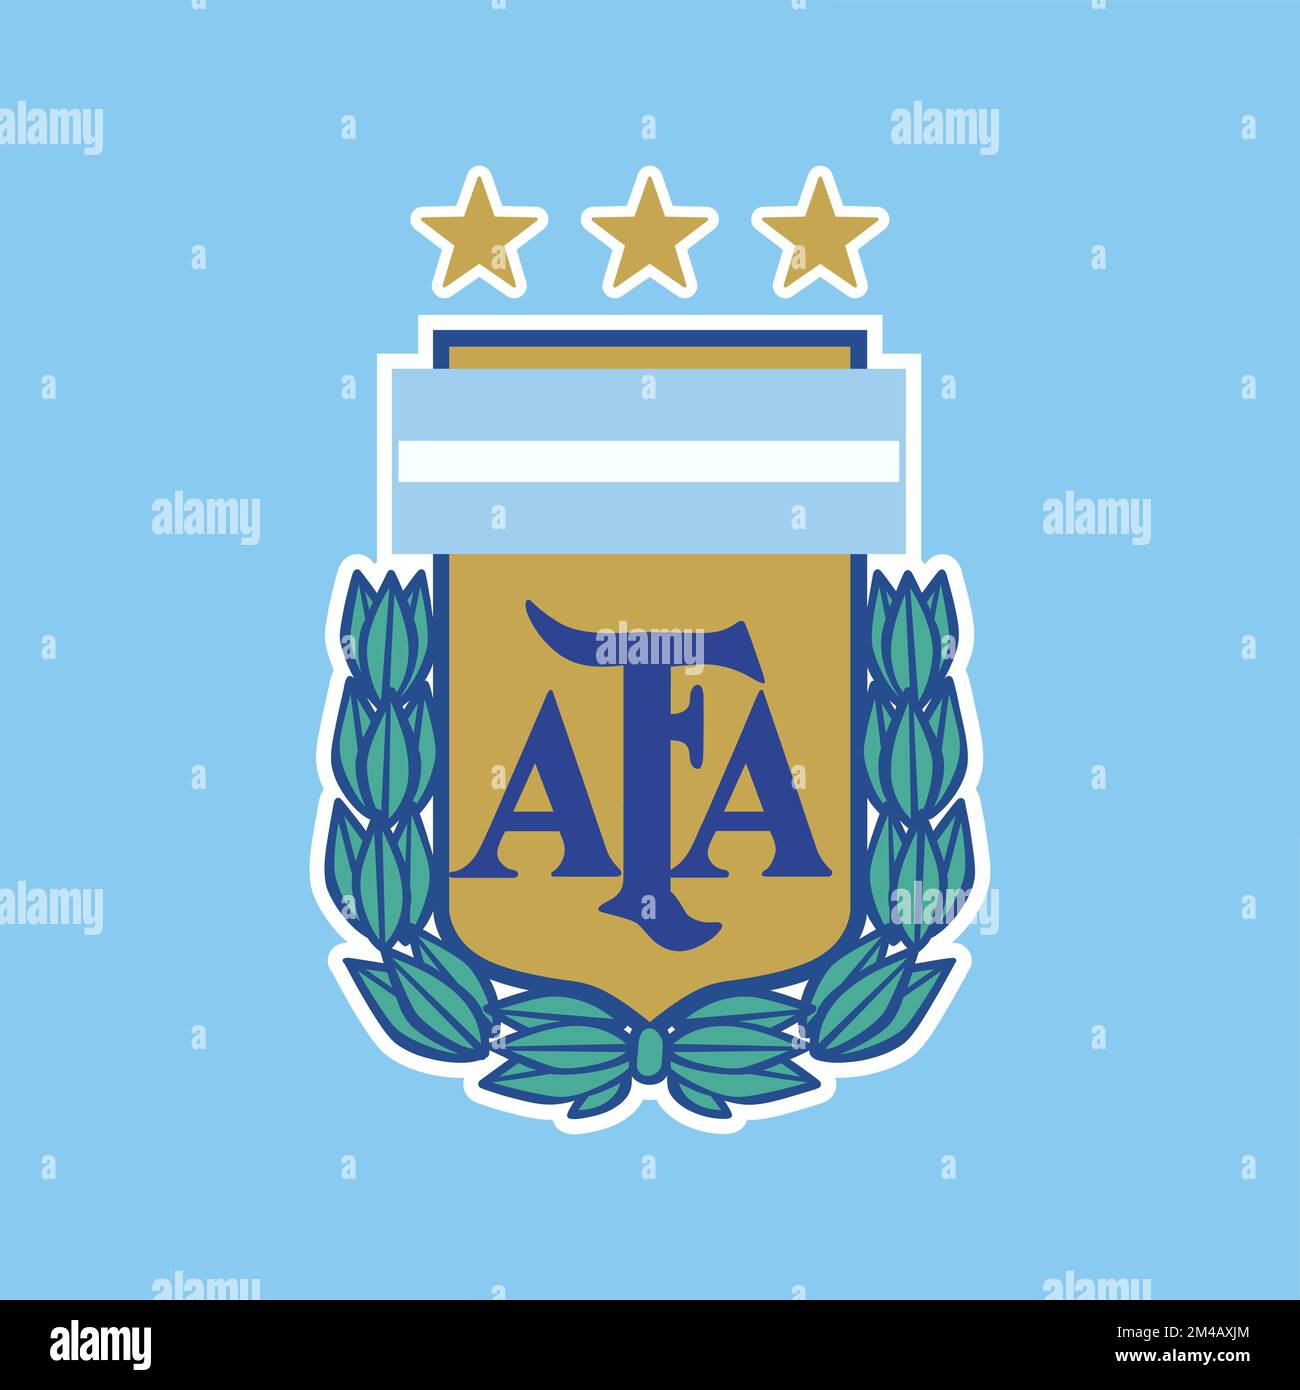 Nuovo scudo dell'AFA. Associazione calcistica argentina. Terzo stella. Campionato vinto dalla nazionale nella Coppa del mondo FIFA Qatar 2022. Illustrazione Vettoriale